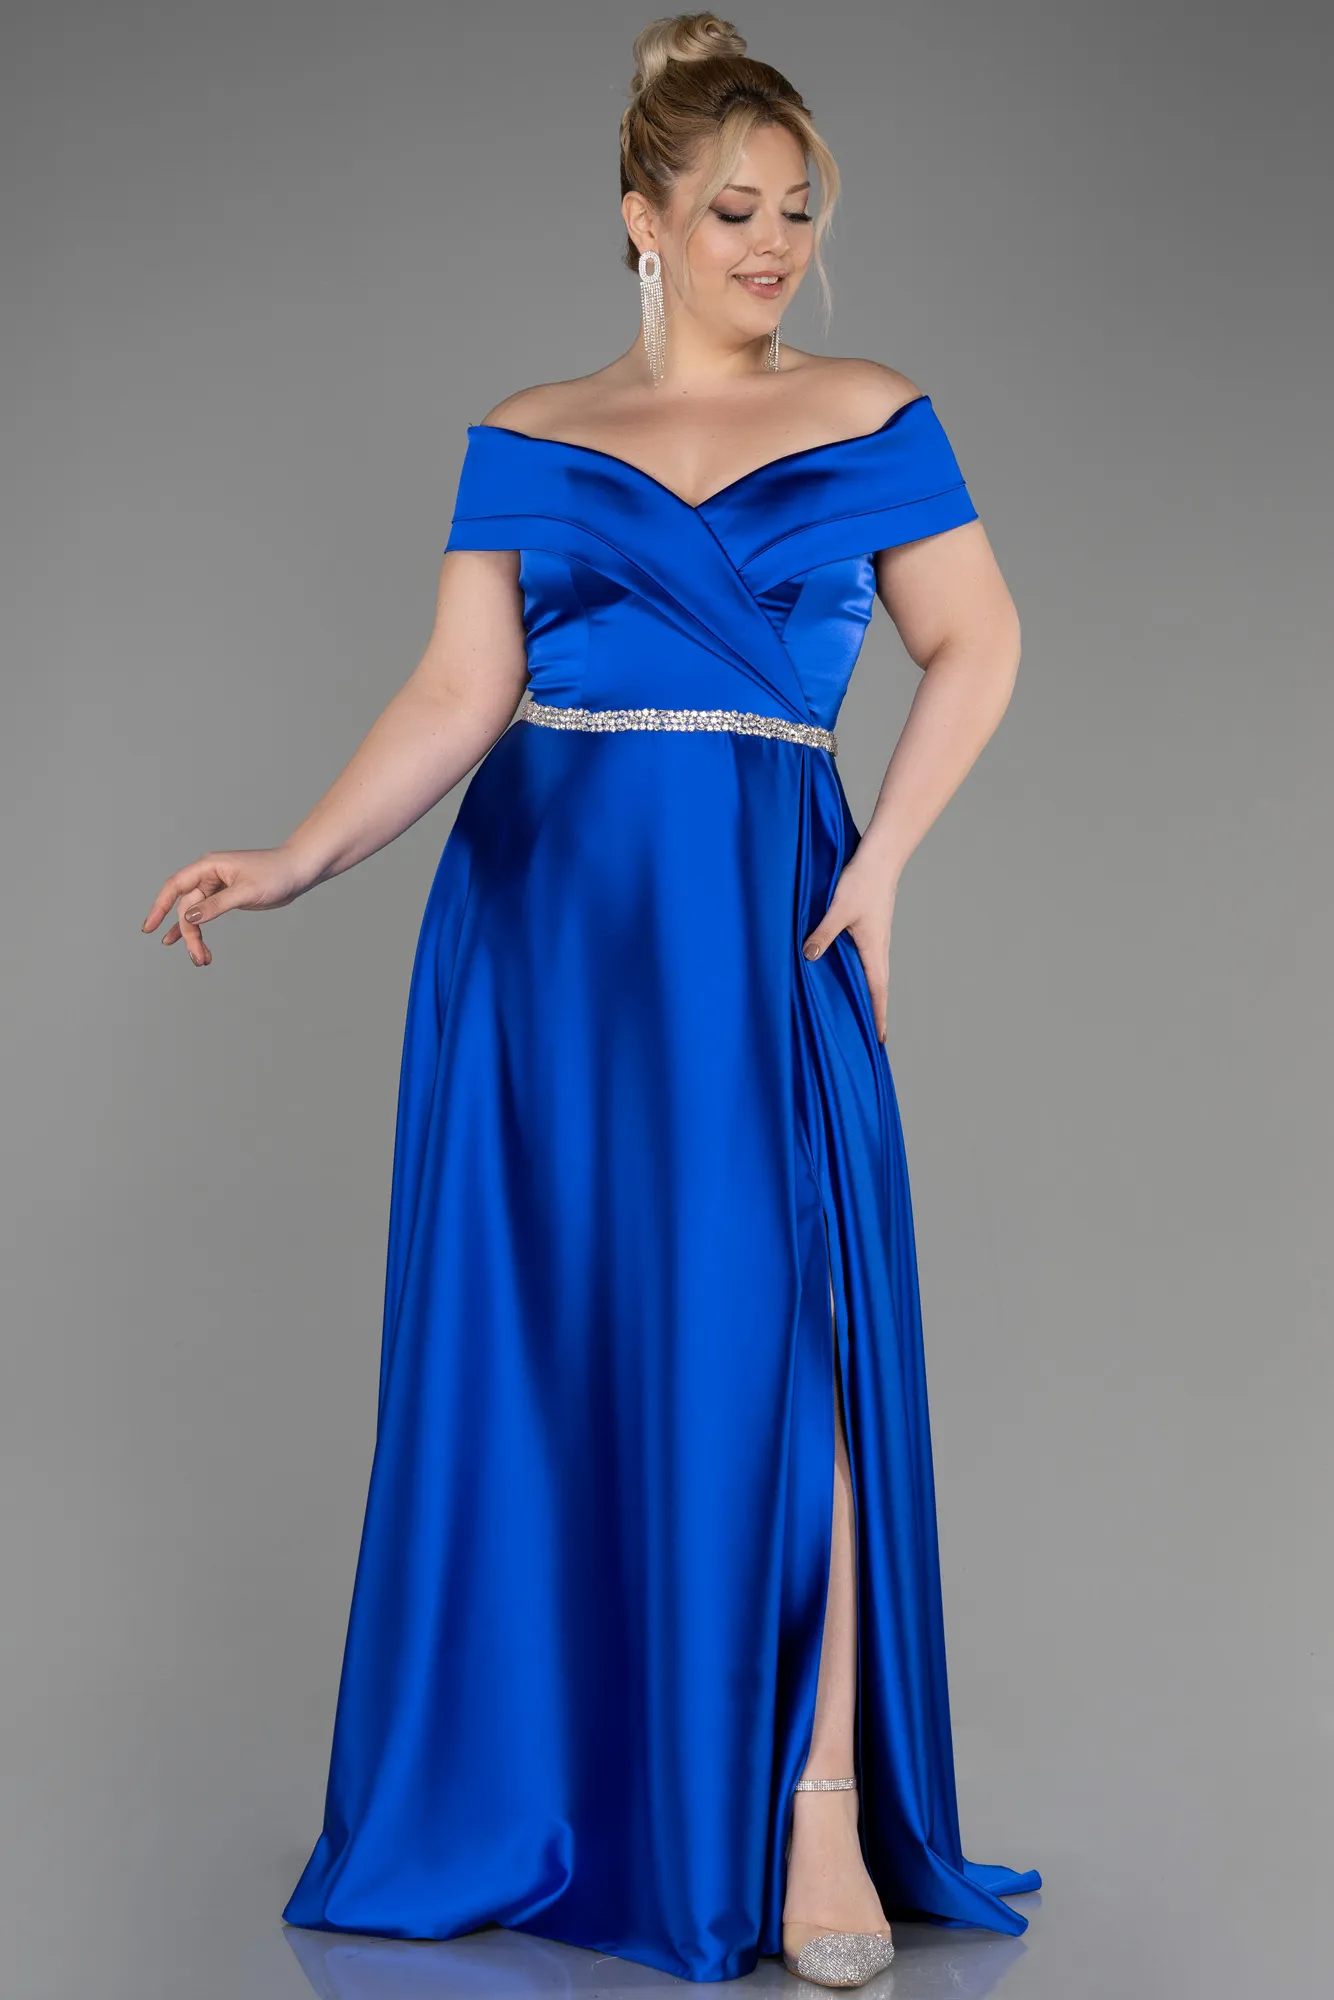 Sax Blue-Long Satin Plus Size Wedding Dress ABU3801